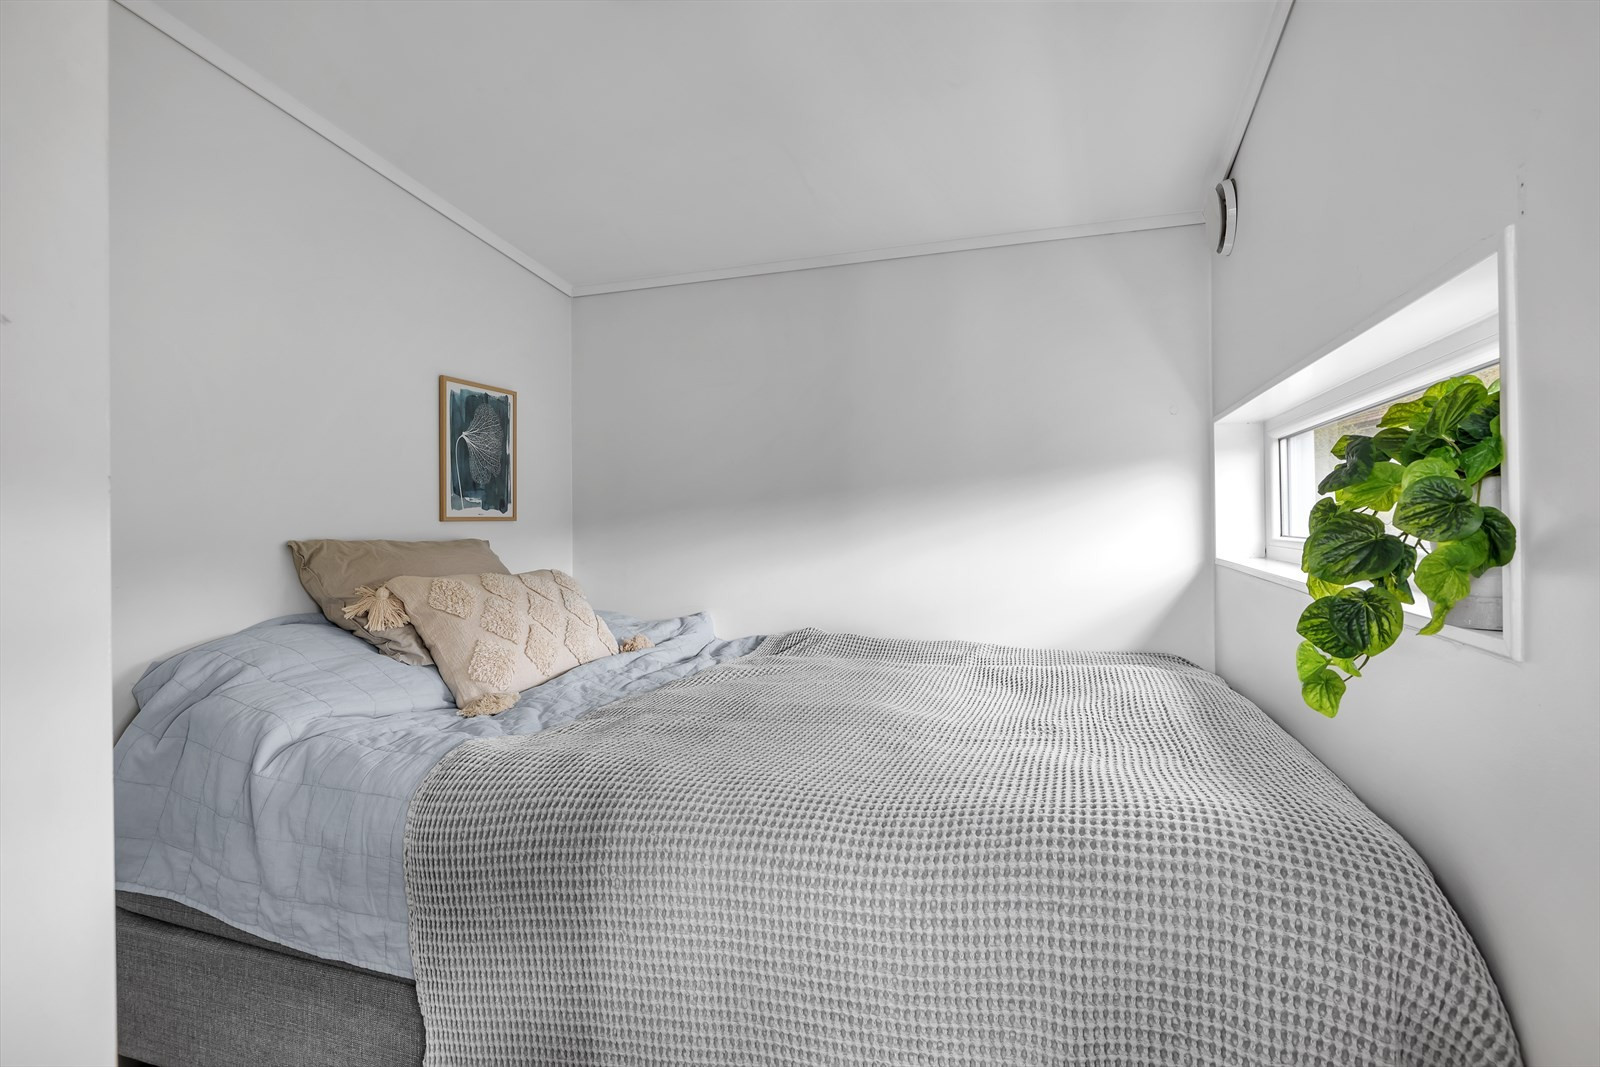 Soverommet på loftet er av stor størrelse og har egen del for seng i bakkant